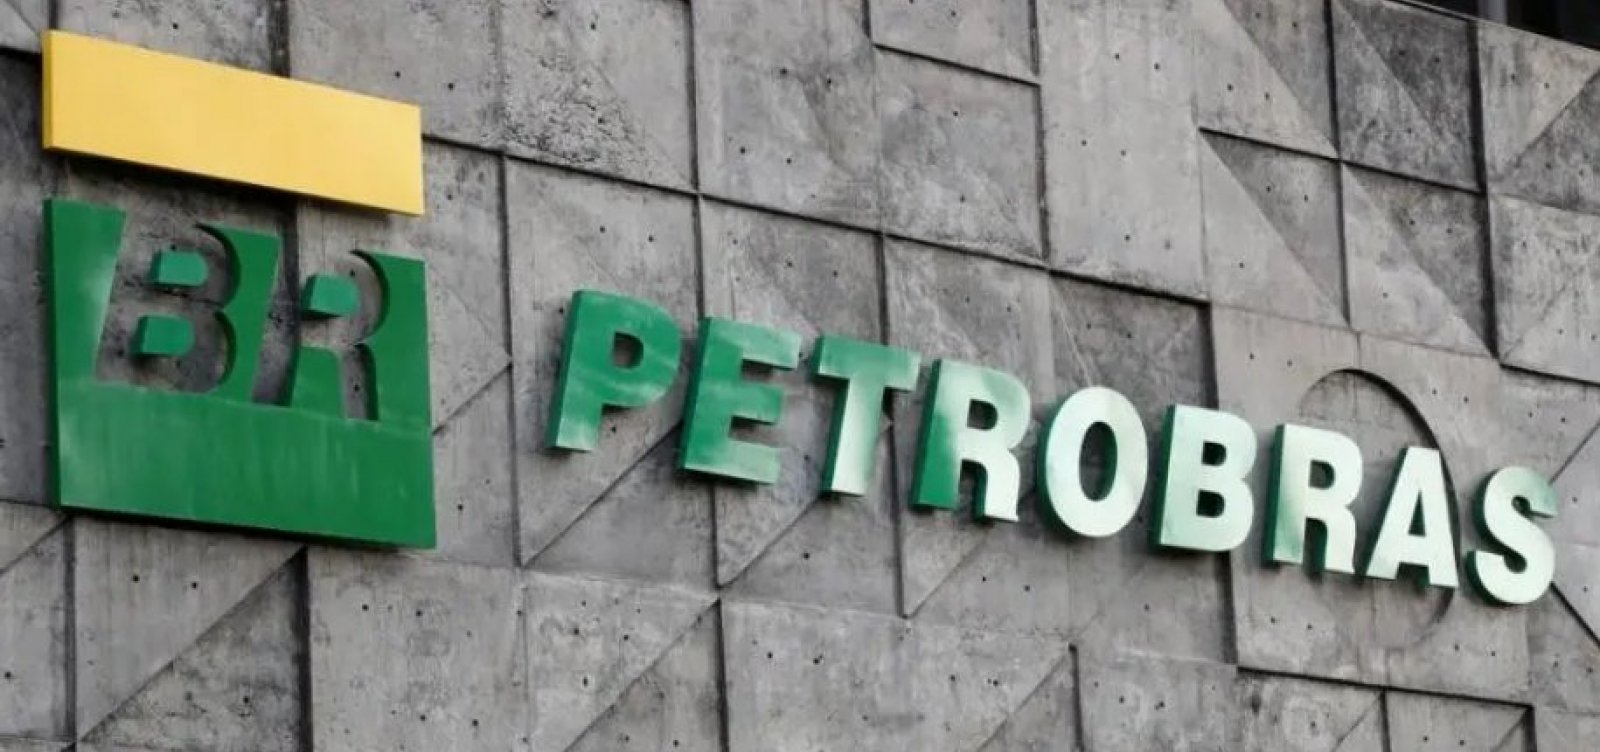 Presidente da Petrobras diz que reajustes devem ser feitos “para manter saúde financeira da companhia”